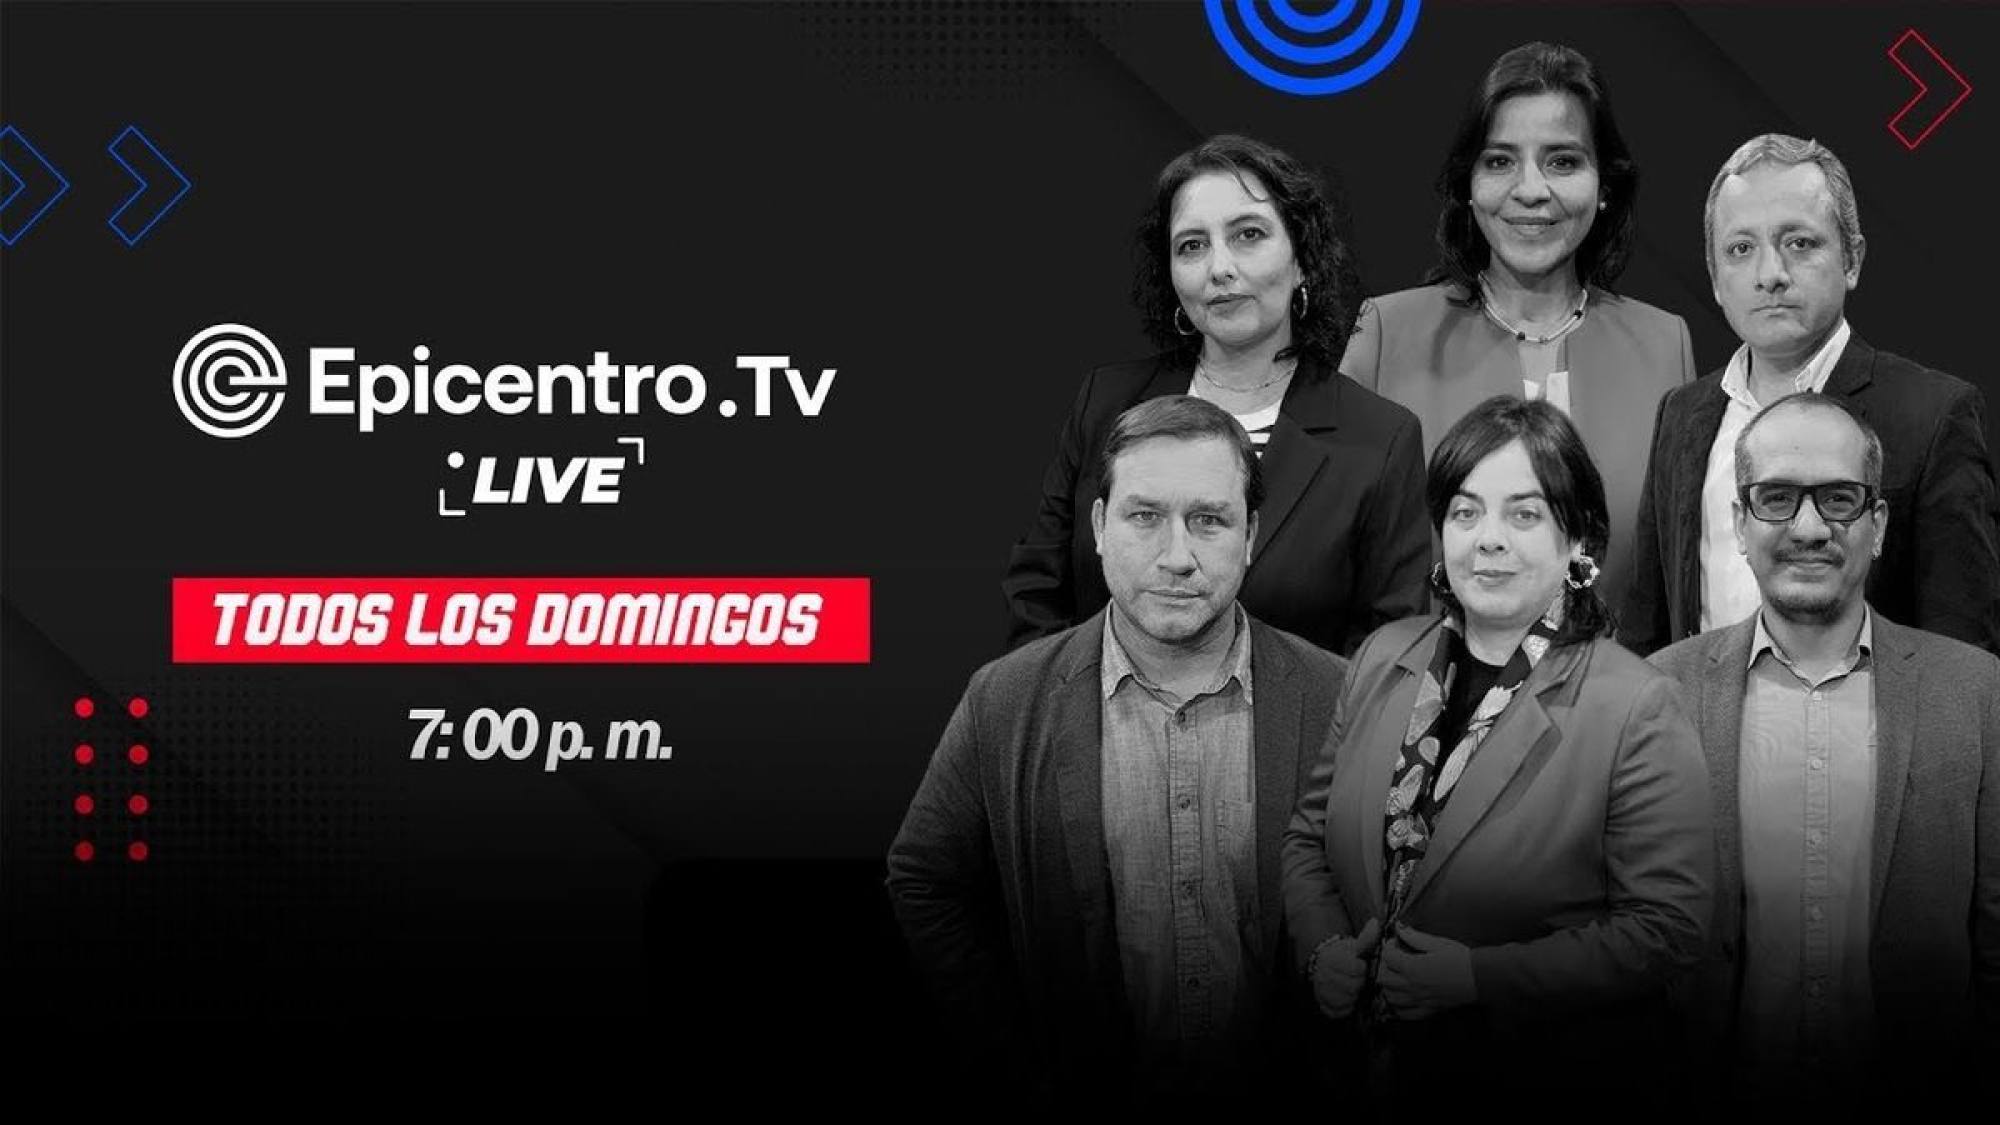 Epicentro Tv Live | Beder Camacho empieza a hablar ¡y más!, Epicentro TV